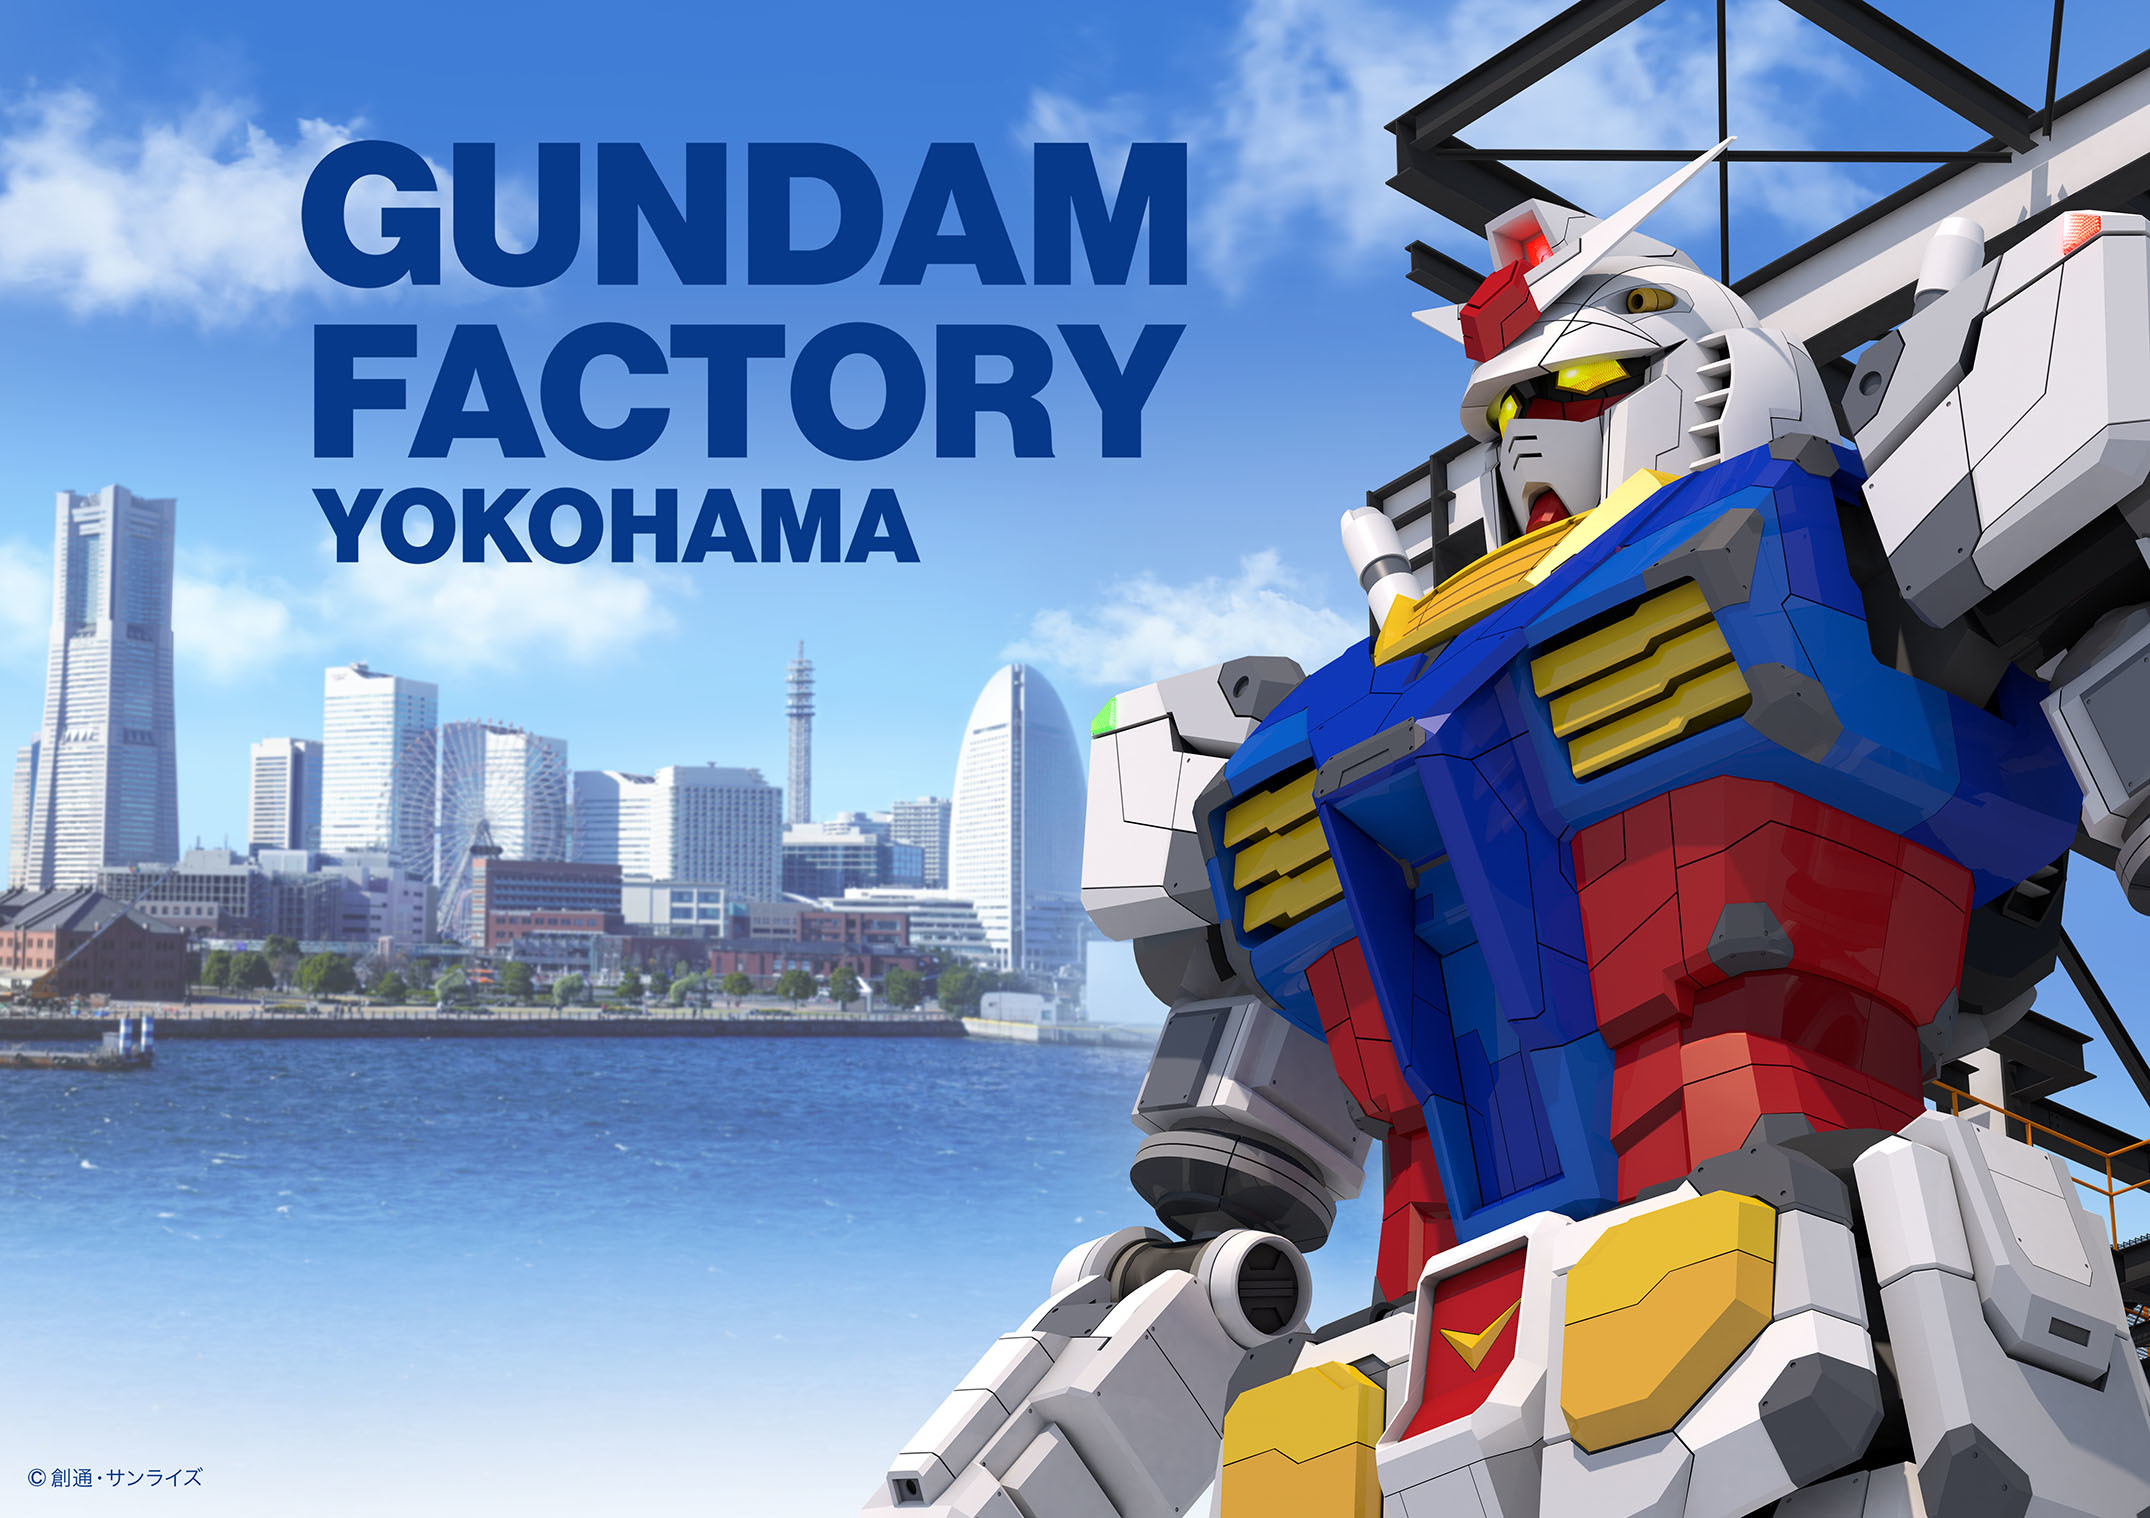 Gotoトラベル 対象でプラモも付く宿泊プランで Gundam Factory Yokohama を堪能しよう 日本旅行で10月30日からオリジナルツアー発売 Spice エンタメ特化型情報メディア スパイス